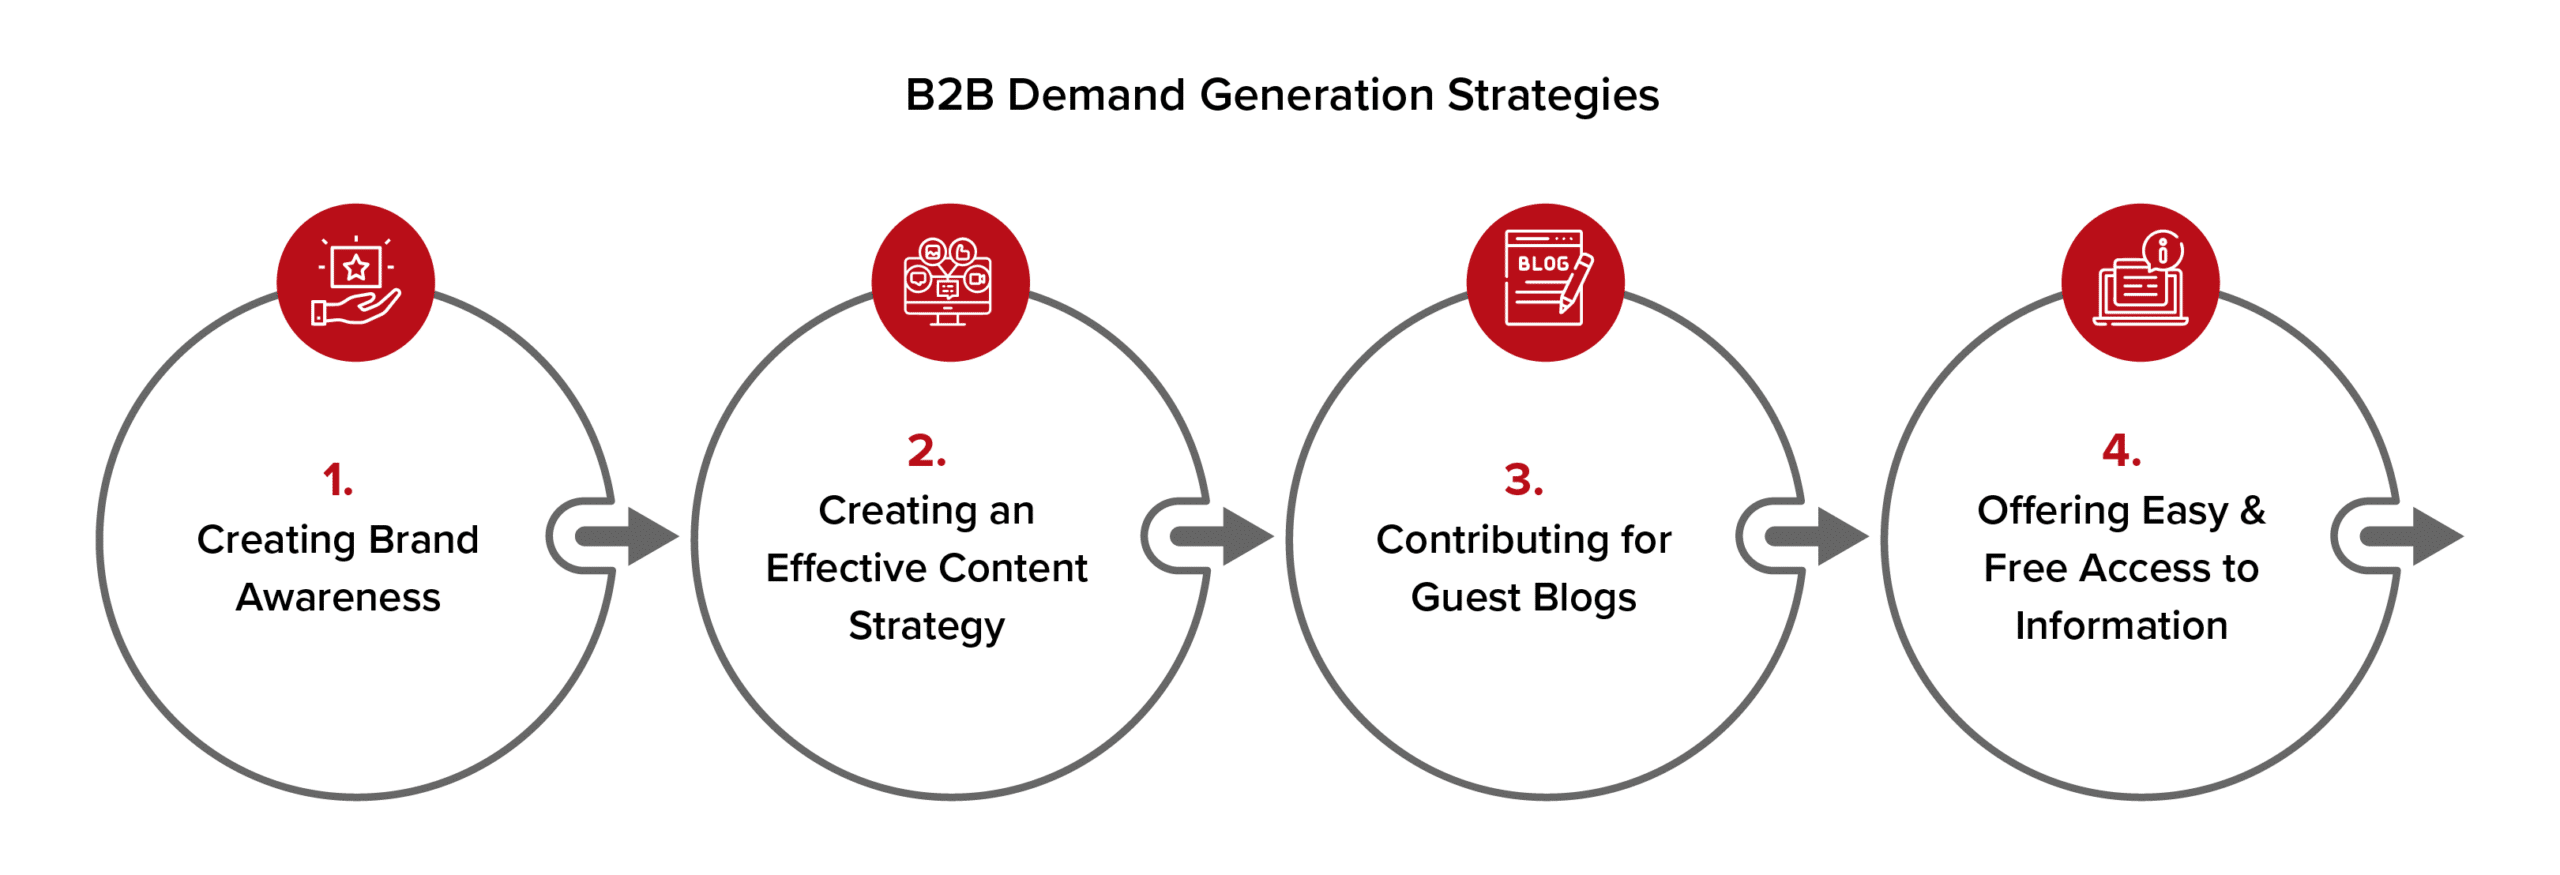 B2B-Demand-Generation-Strategies